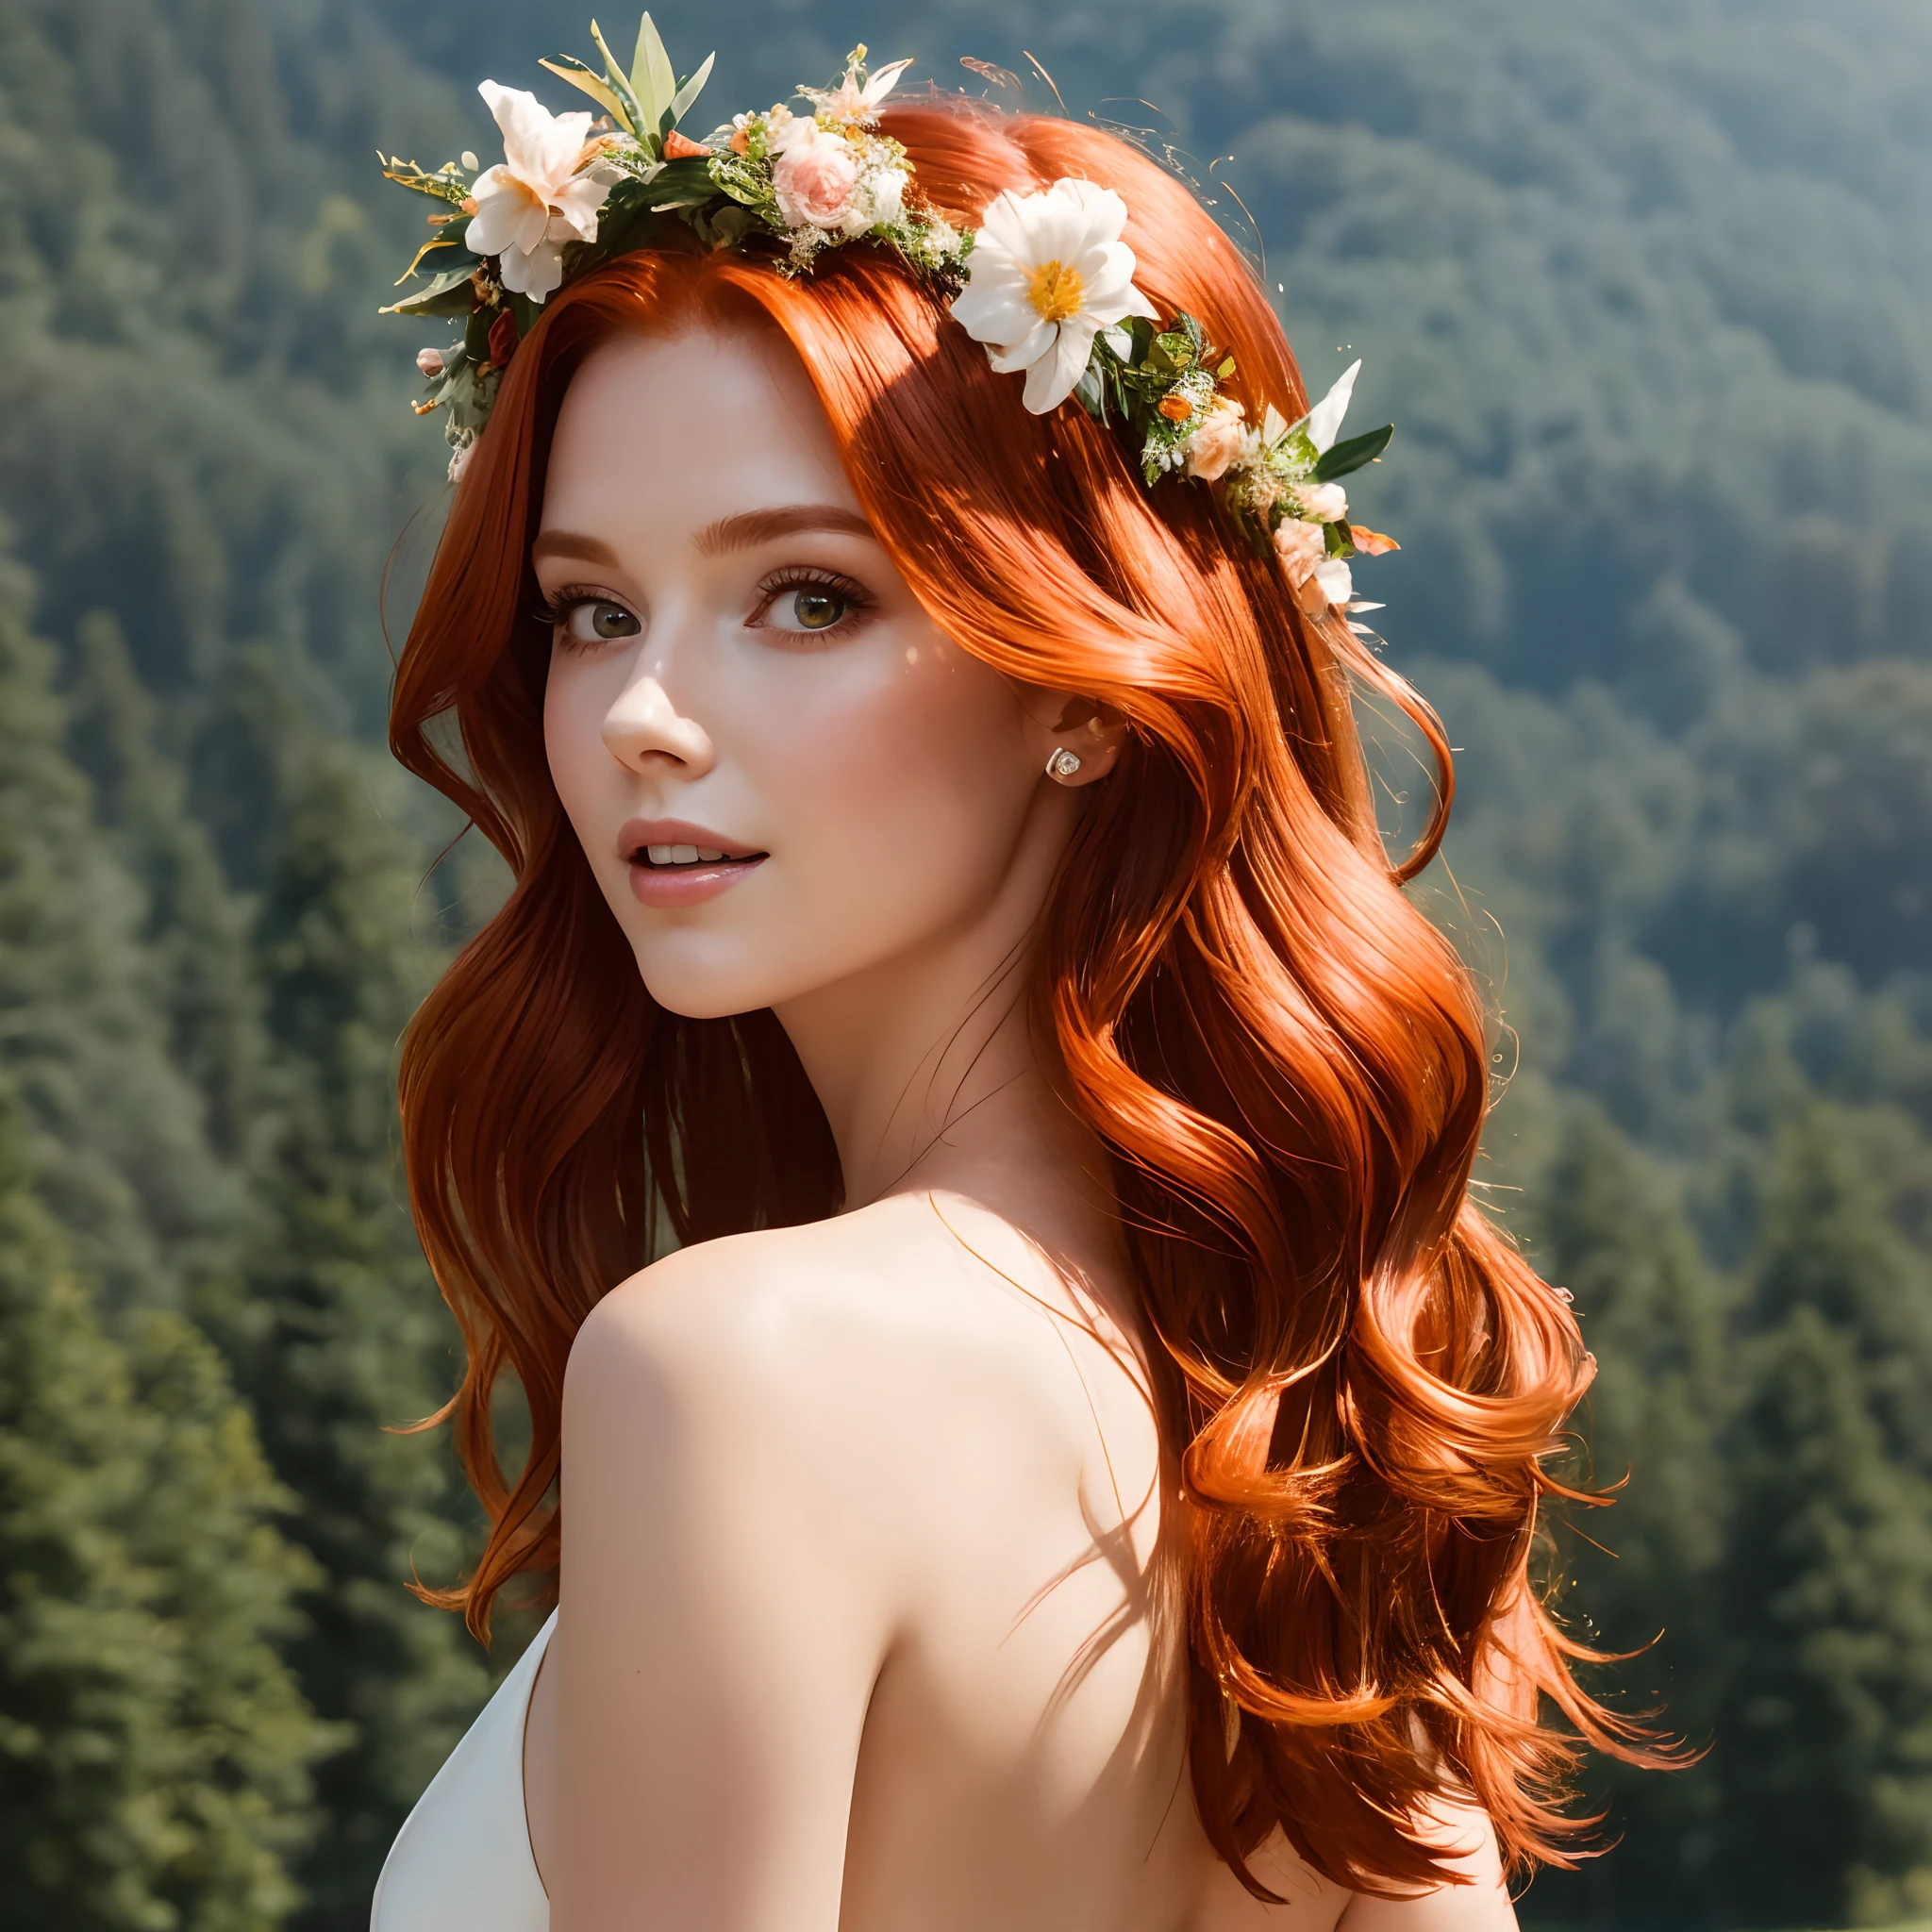 (傑作,  銳利的焦點),  ((特寫:1.5)),  一位優雅的 25 歲紅髮女子 ,  飄逸的頭髮, 淡淡的微笑,  性感的身體, 森林背景,  體積光,  优雅的夏季连衣裙,  焦点面,  陽光下的小雨,  紅髮, 結局,  輕霧,  花冠